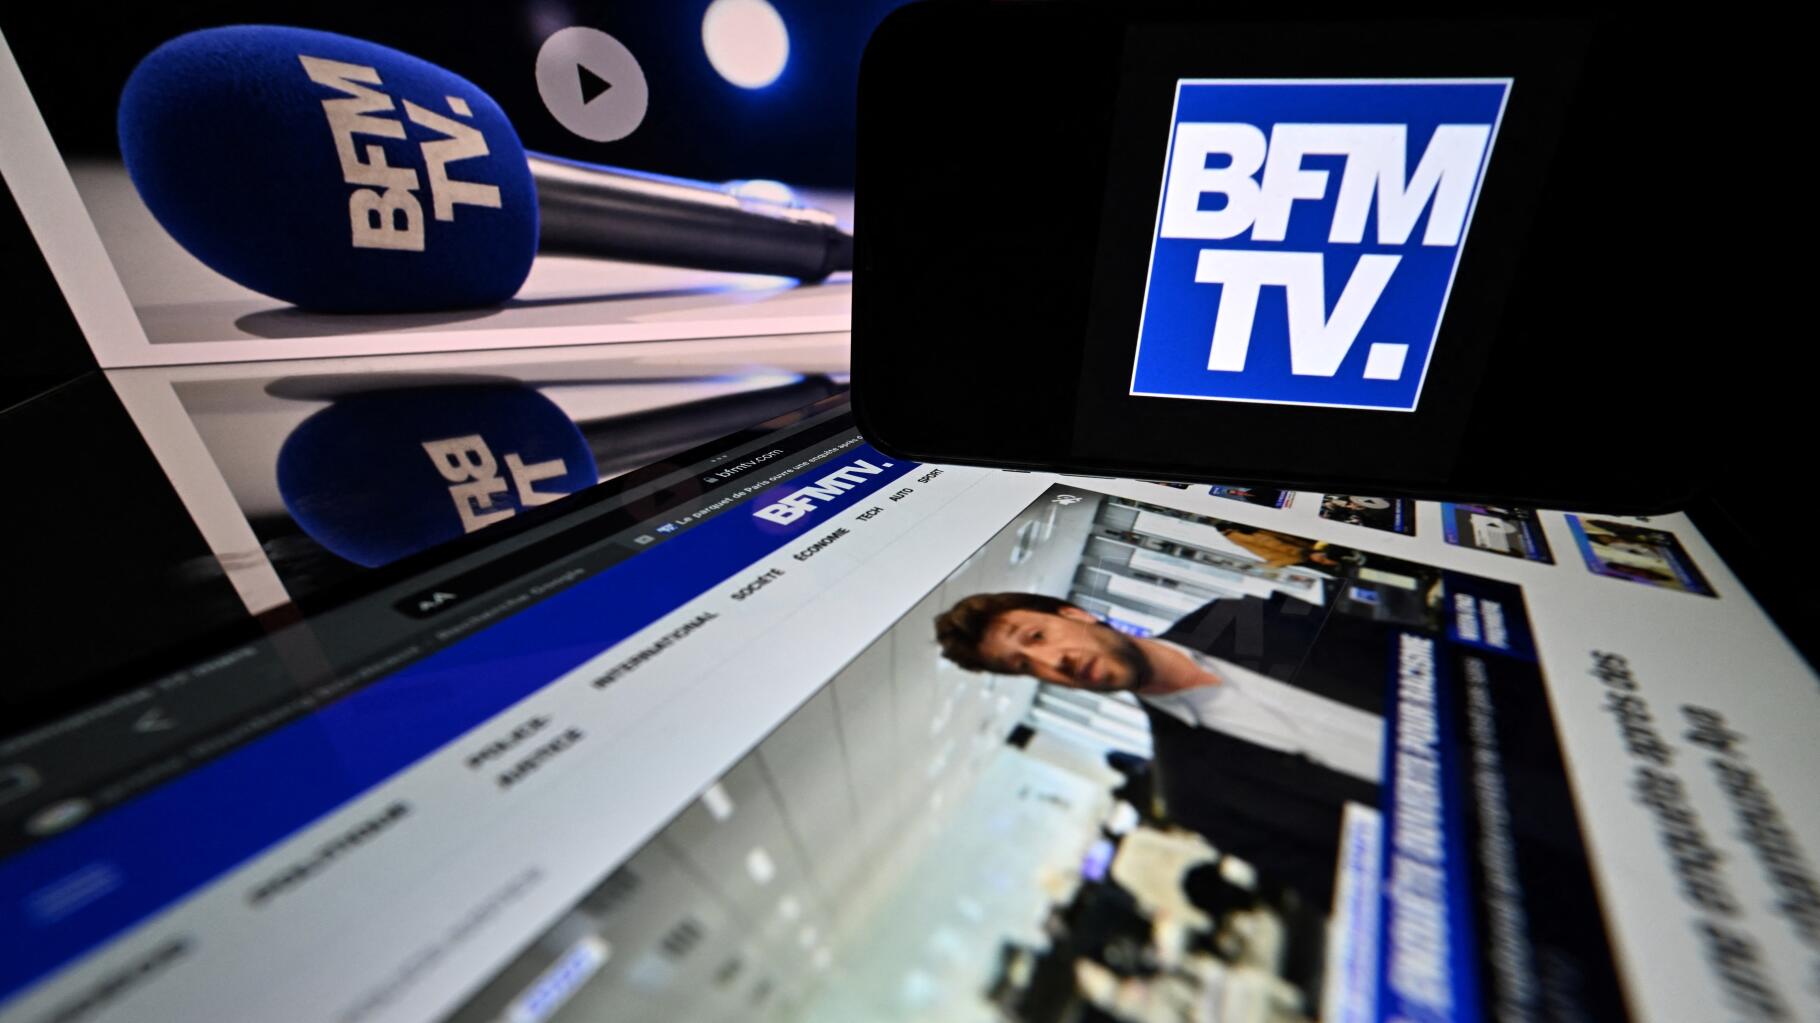 BFMTV et RMC victimes d’un « incident technique », leur diffusion perturbée